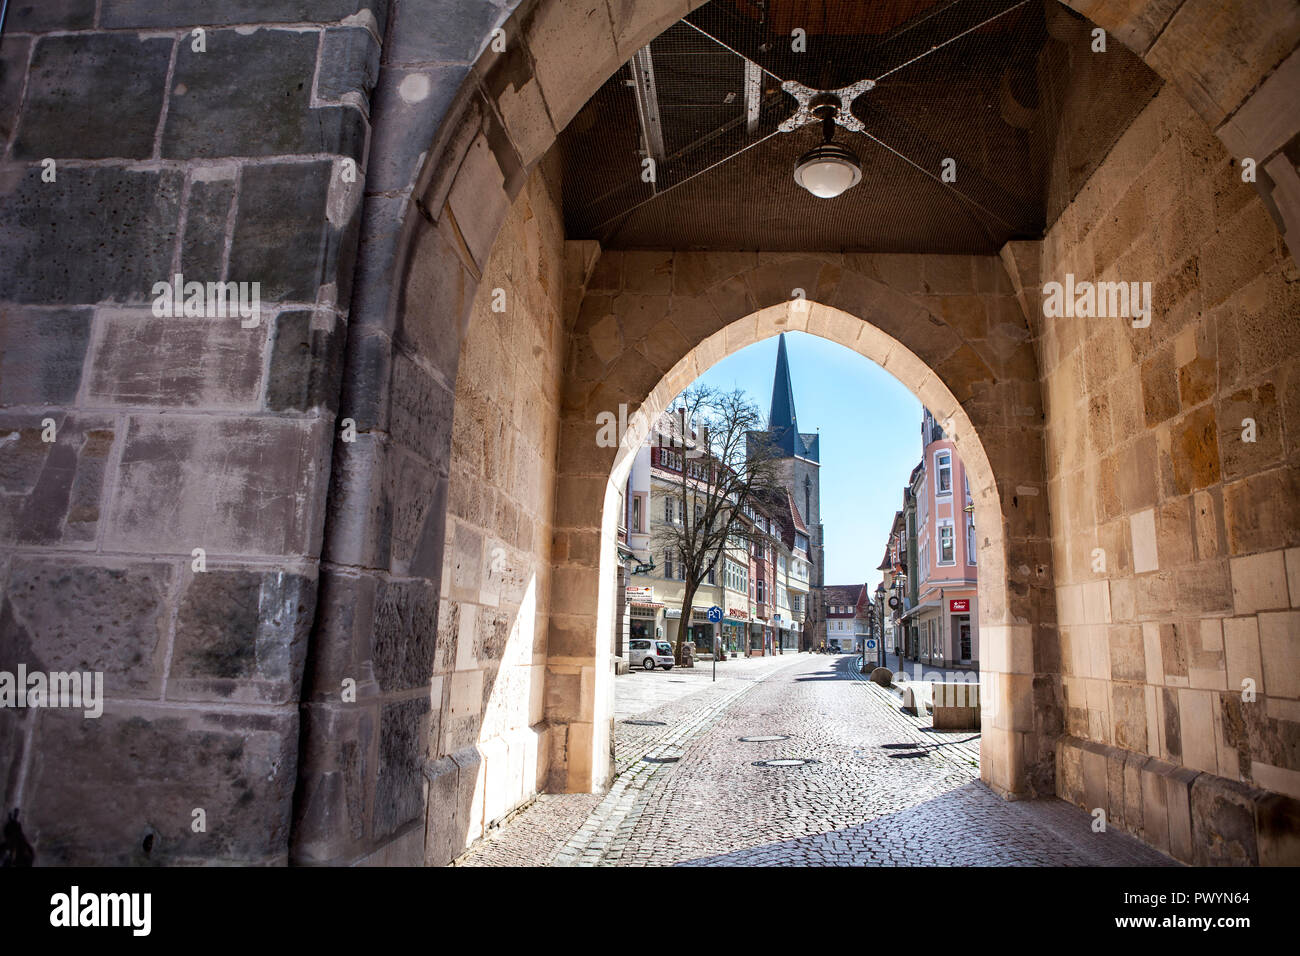 La porte de la vieille ville Westerturm, Duderstadt, Basse-Saxe, Allemagne, Europe Banque D'Images